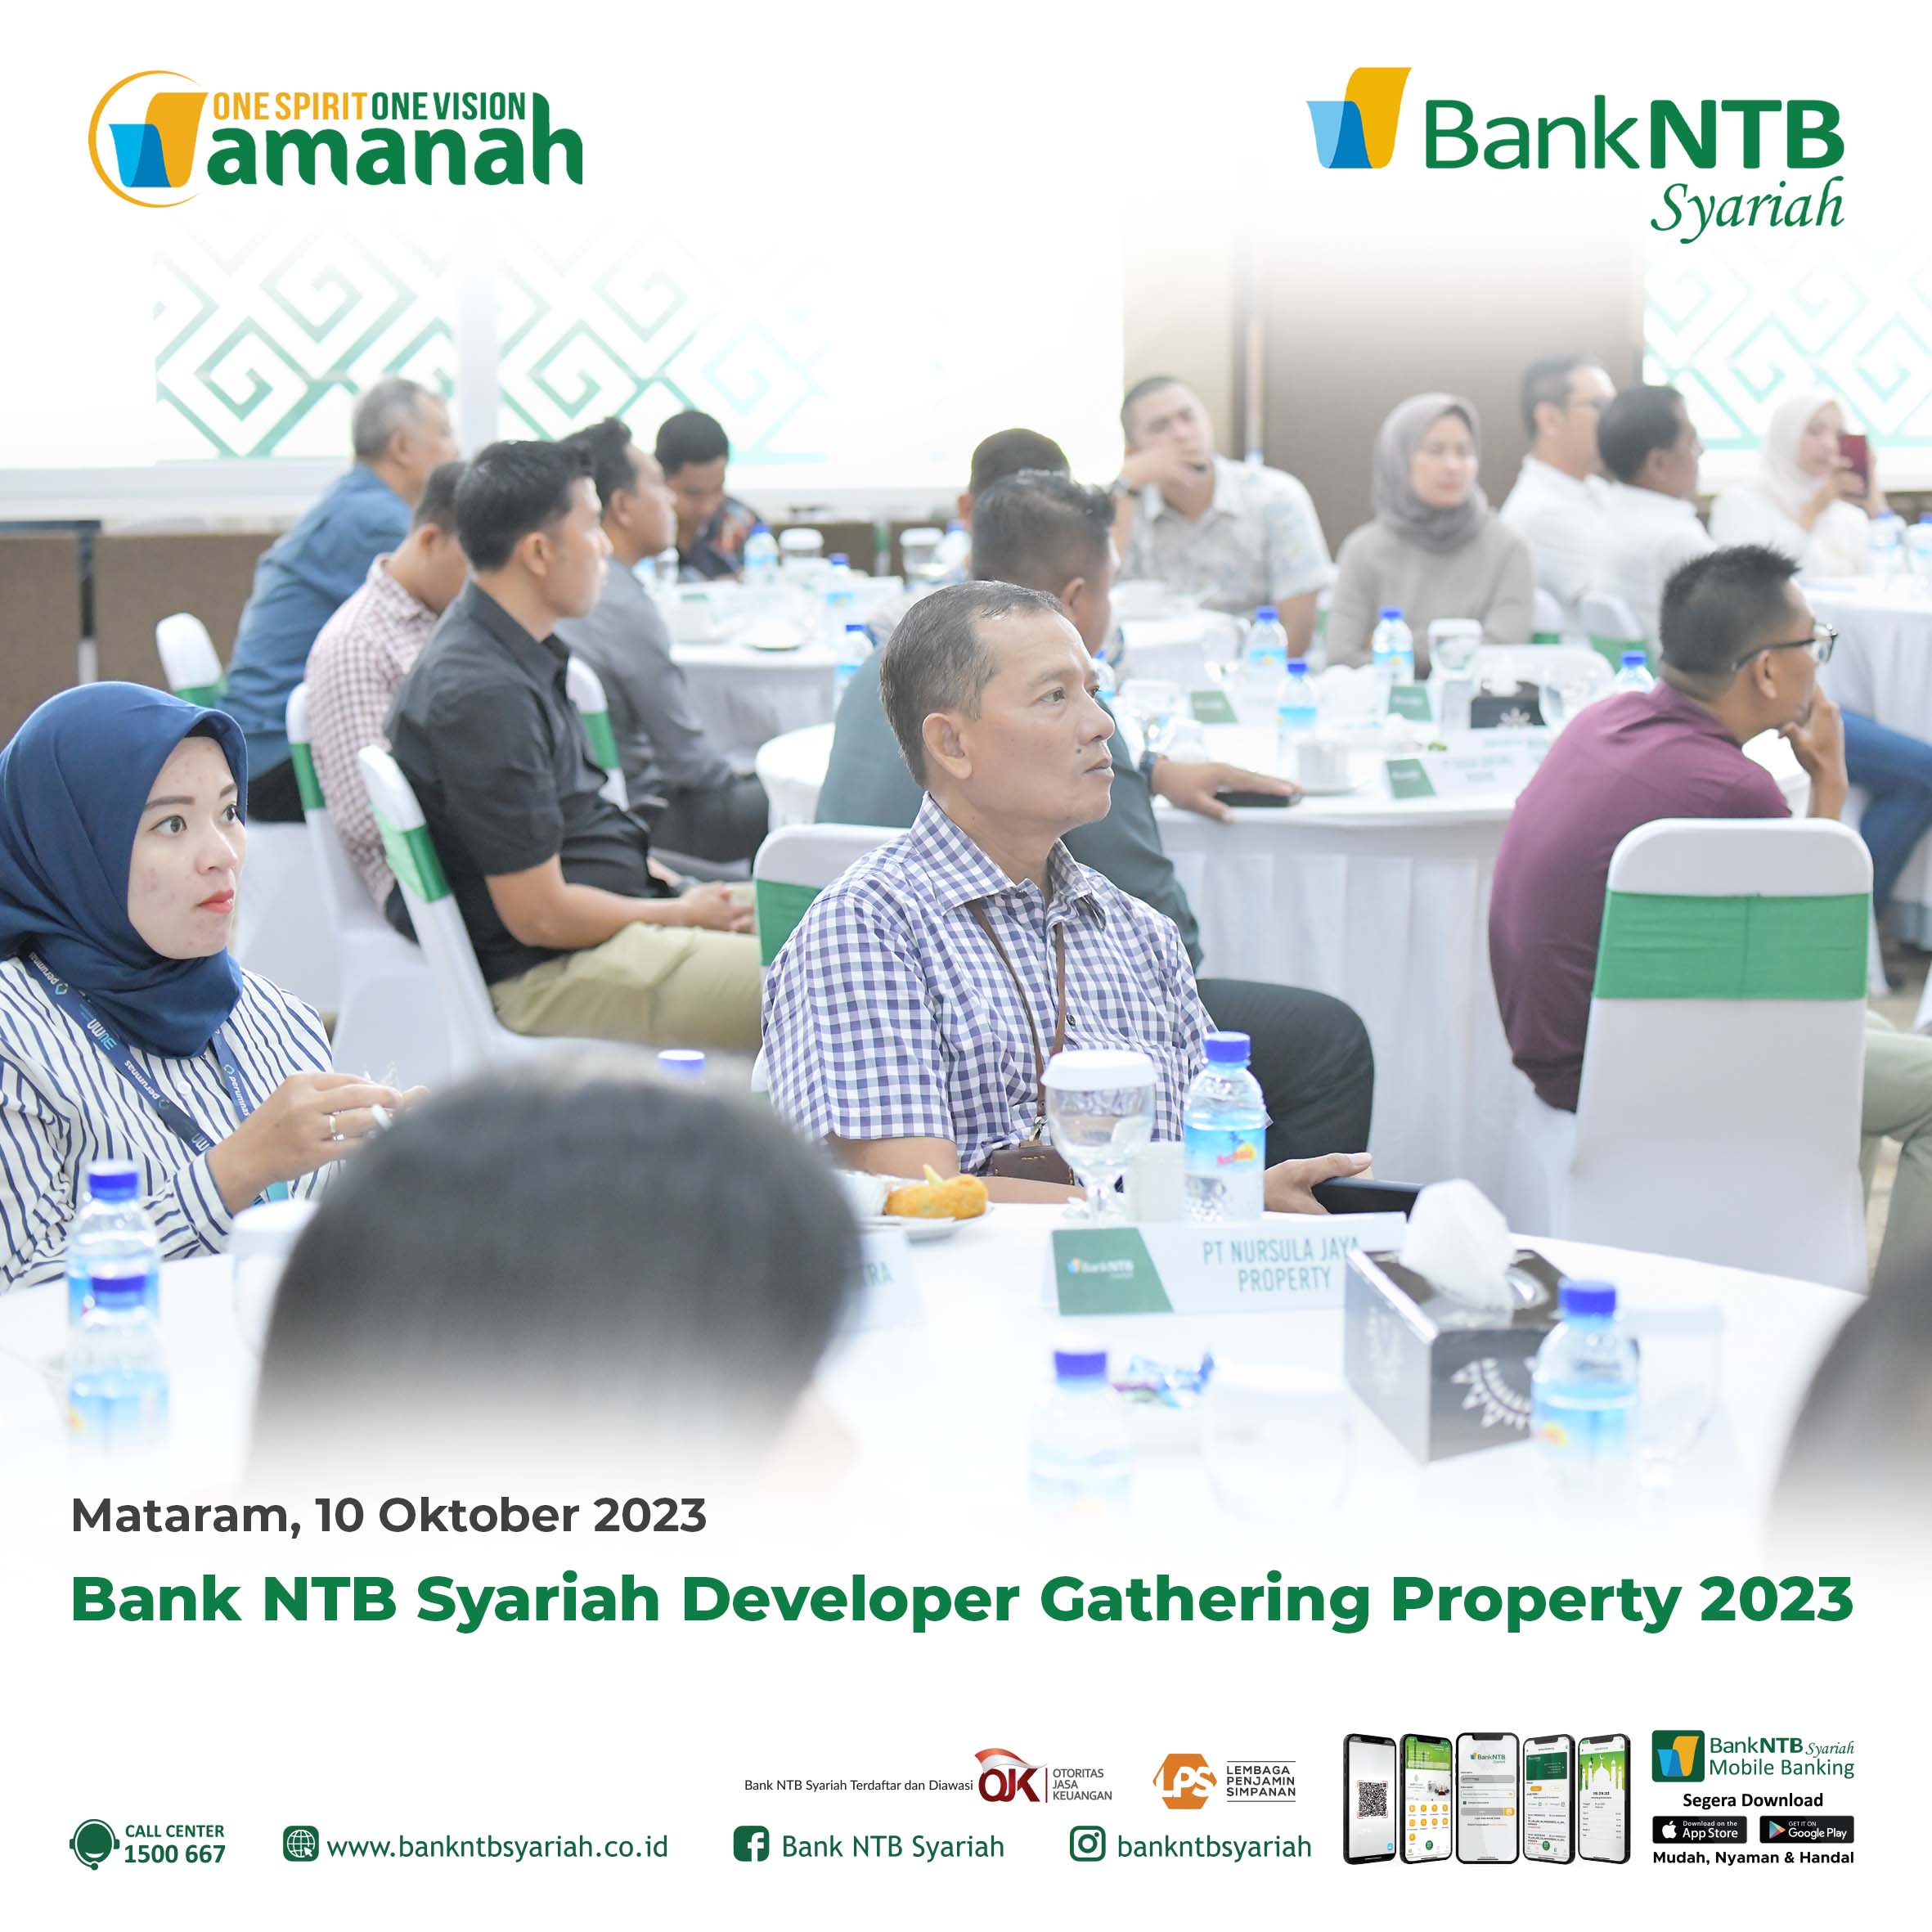 Bank-NTB-Syariah-Developer-Gathering-Property-2023.html